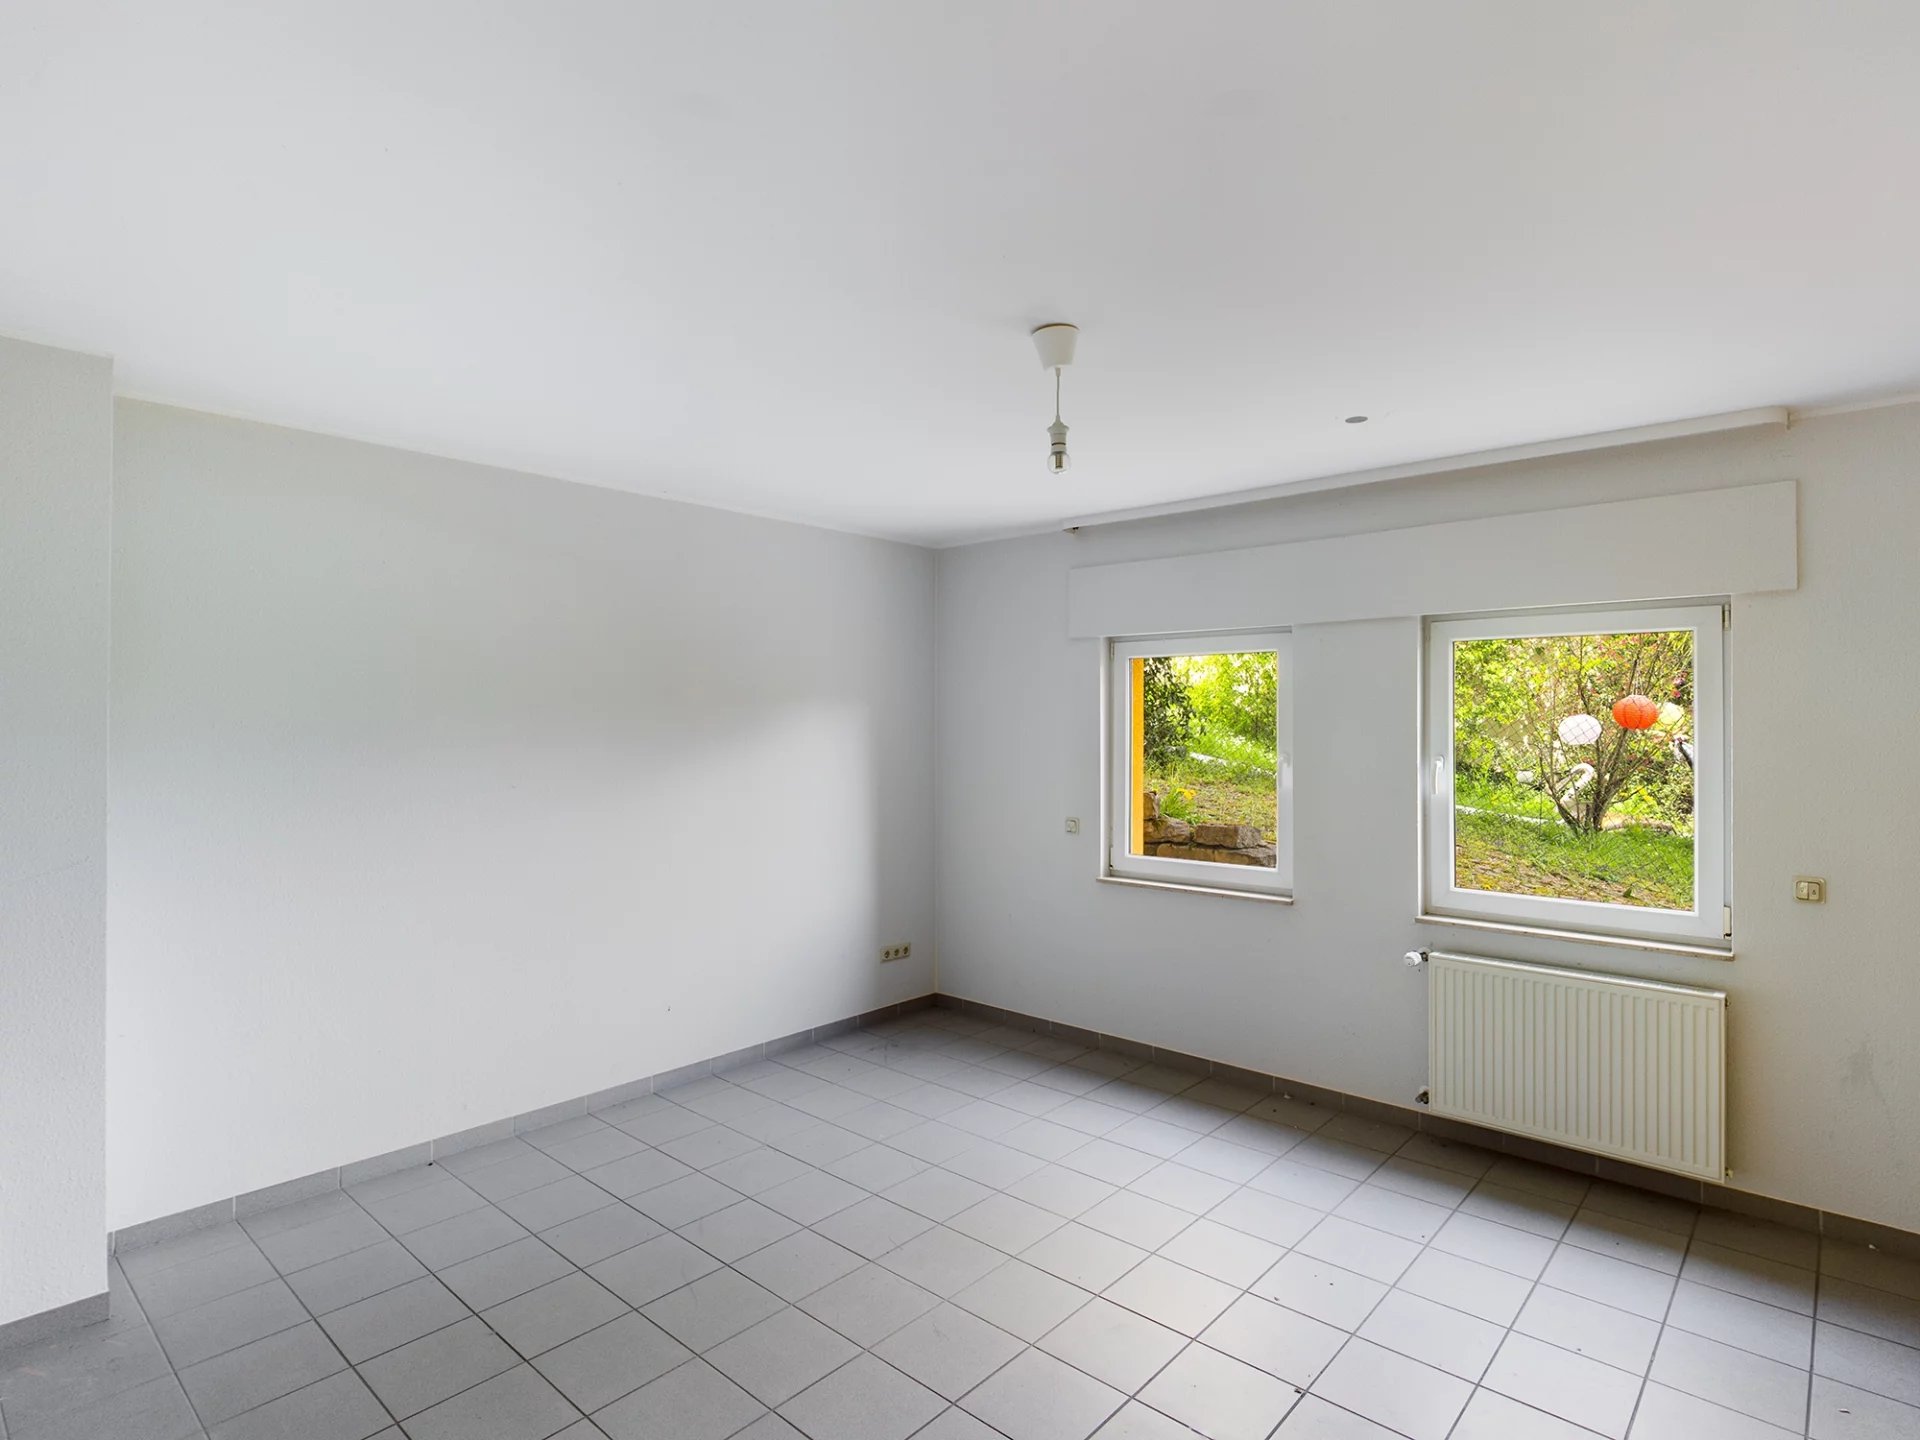 Haus mit 5 Schlafzimmern und Büro zum Verkauf in Moersdorf